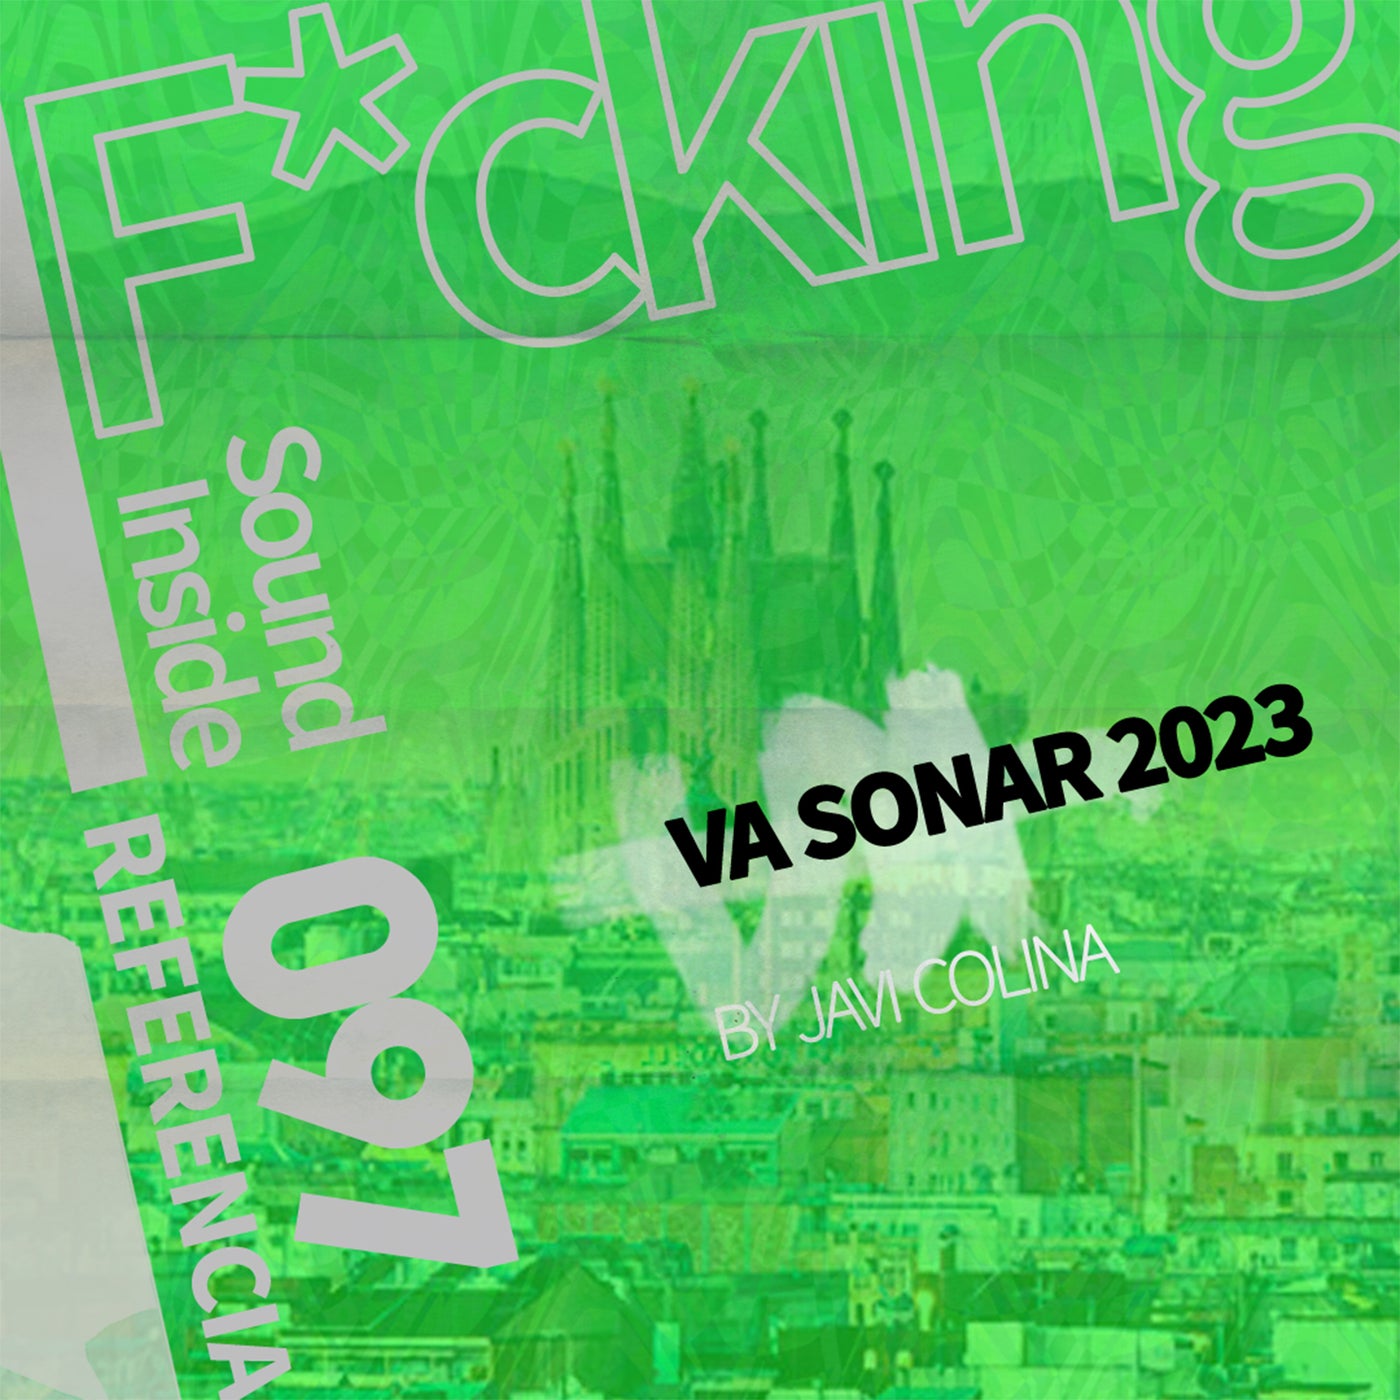 VA SONAR 2023